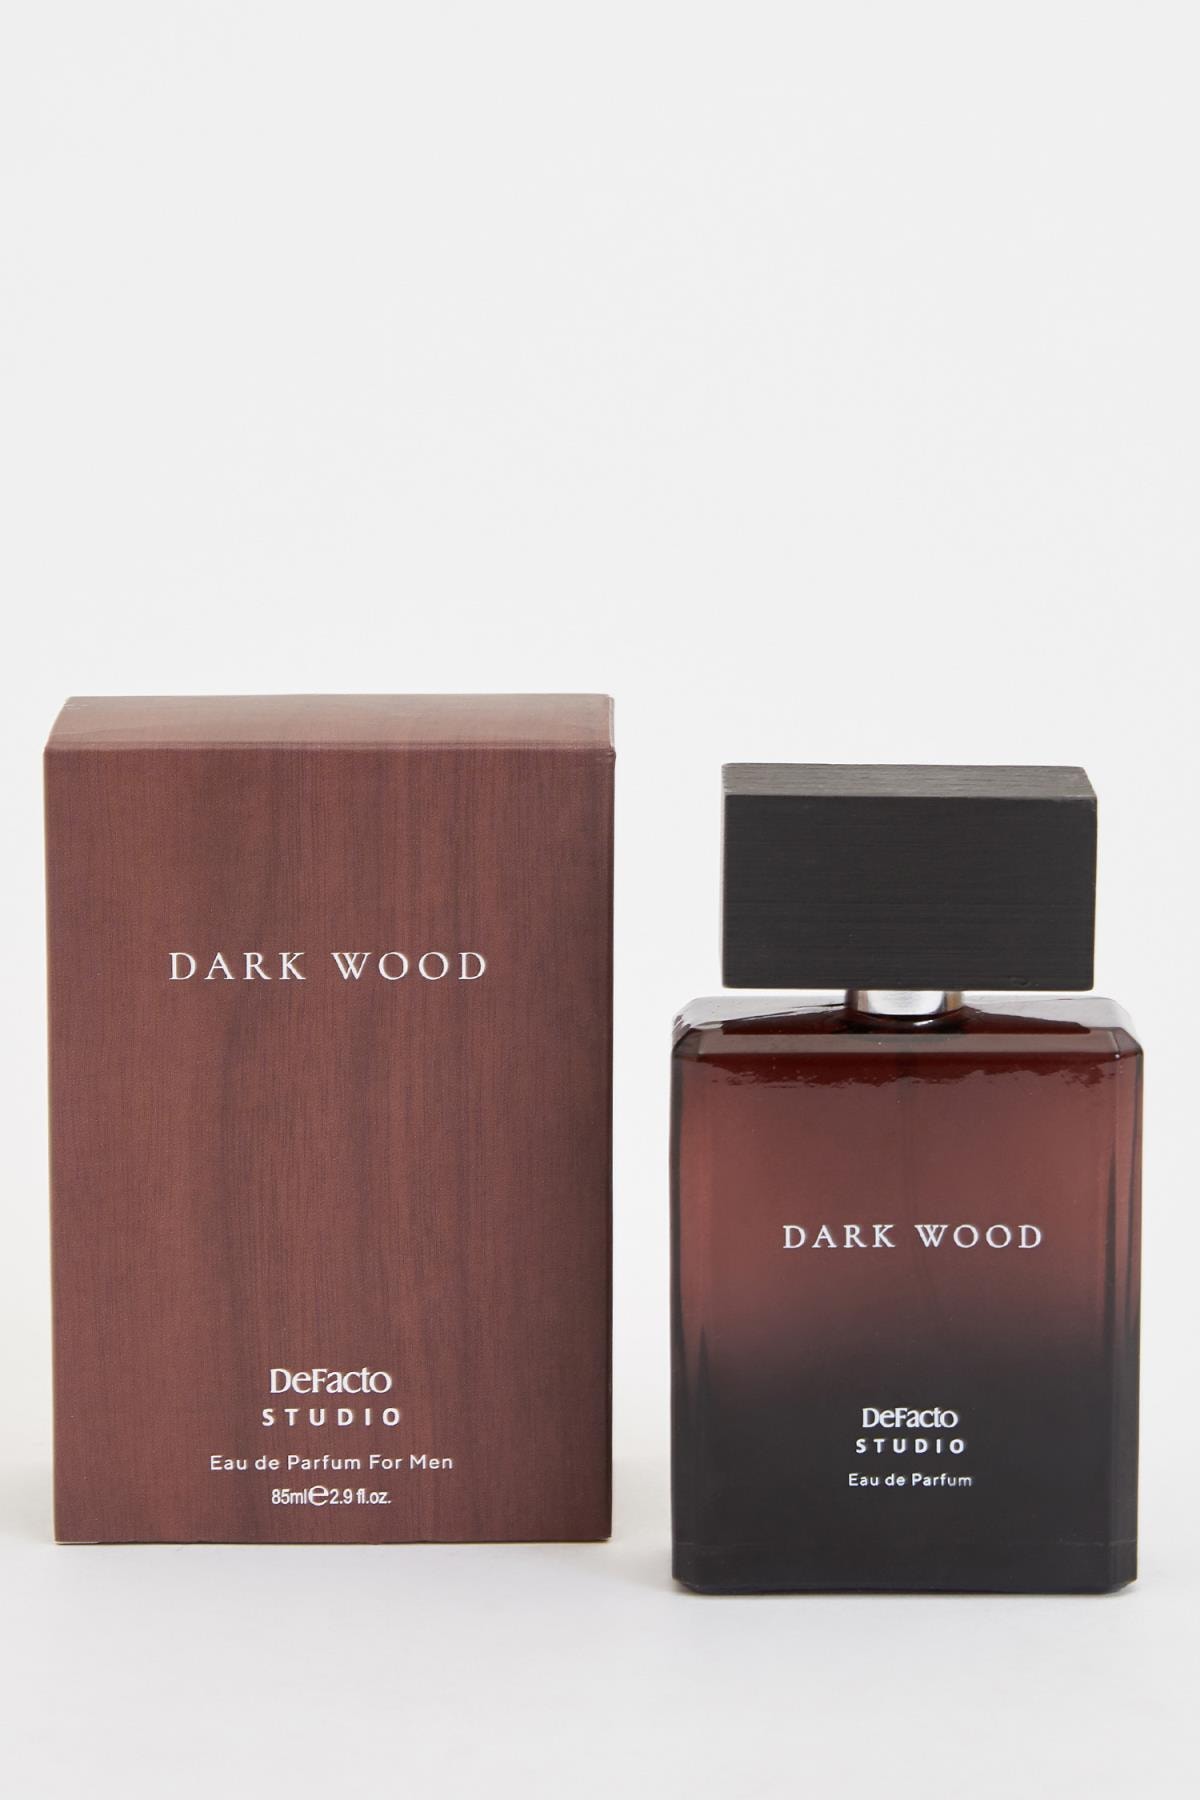 عطر مردانه دارک وود 85 میل دیفکتو Dark Wood Defacto